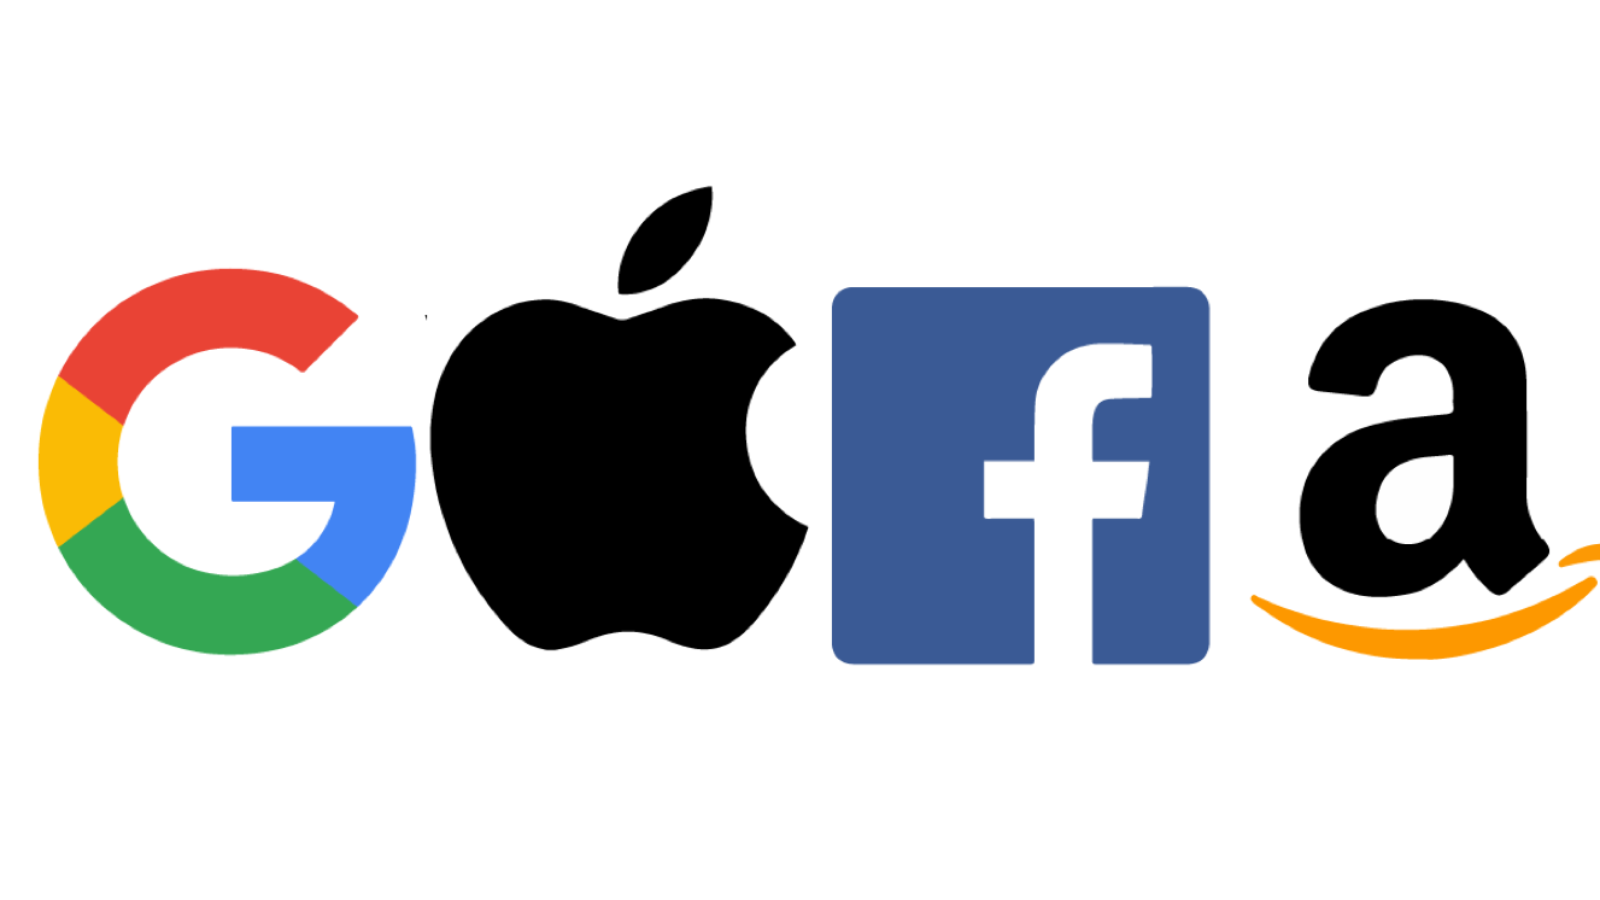 Big Tech logos